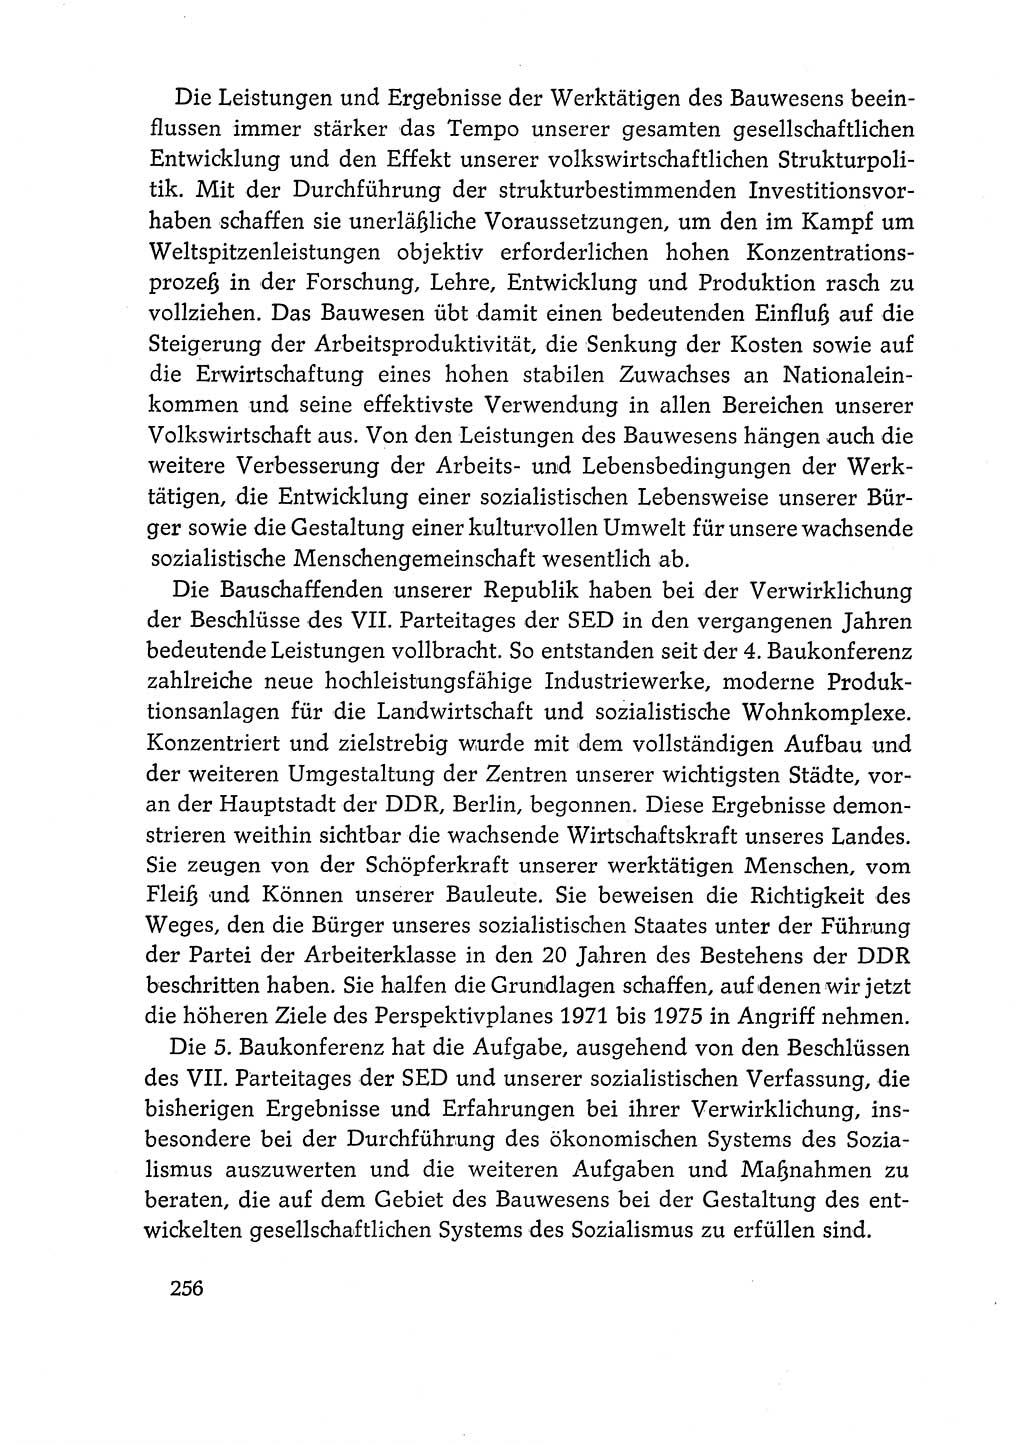 Dokumente der Sozialistischen Einheitspartei Deutschlands (SED) [Deutsche Demokratische Republik (DDR)] 1968-1969, Seite 256 (Dok. SED DDR 1968-1969, S. 256)